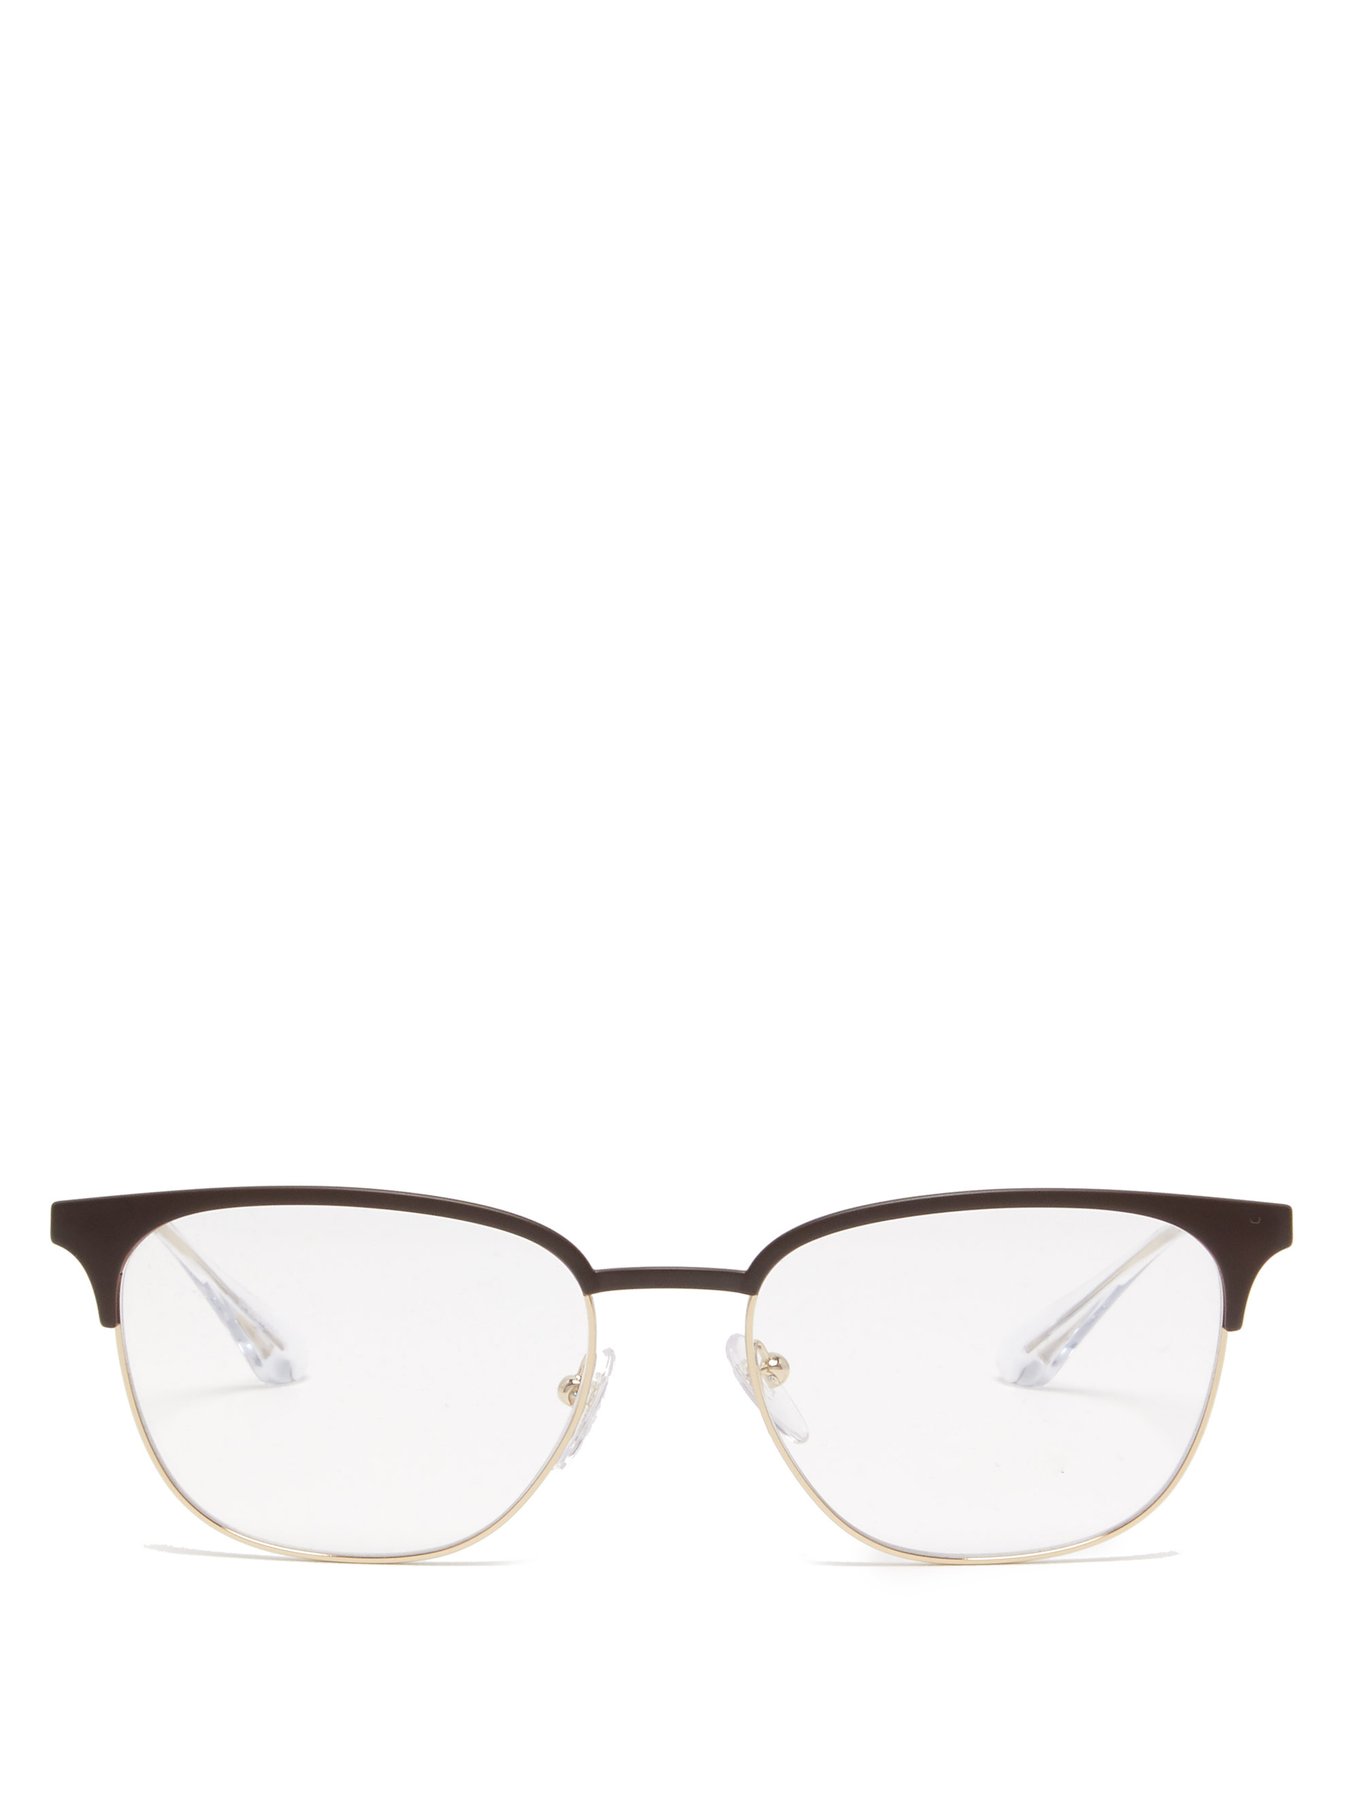 D-frame metal glasses Metallic Prada 